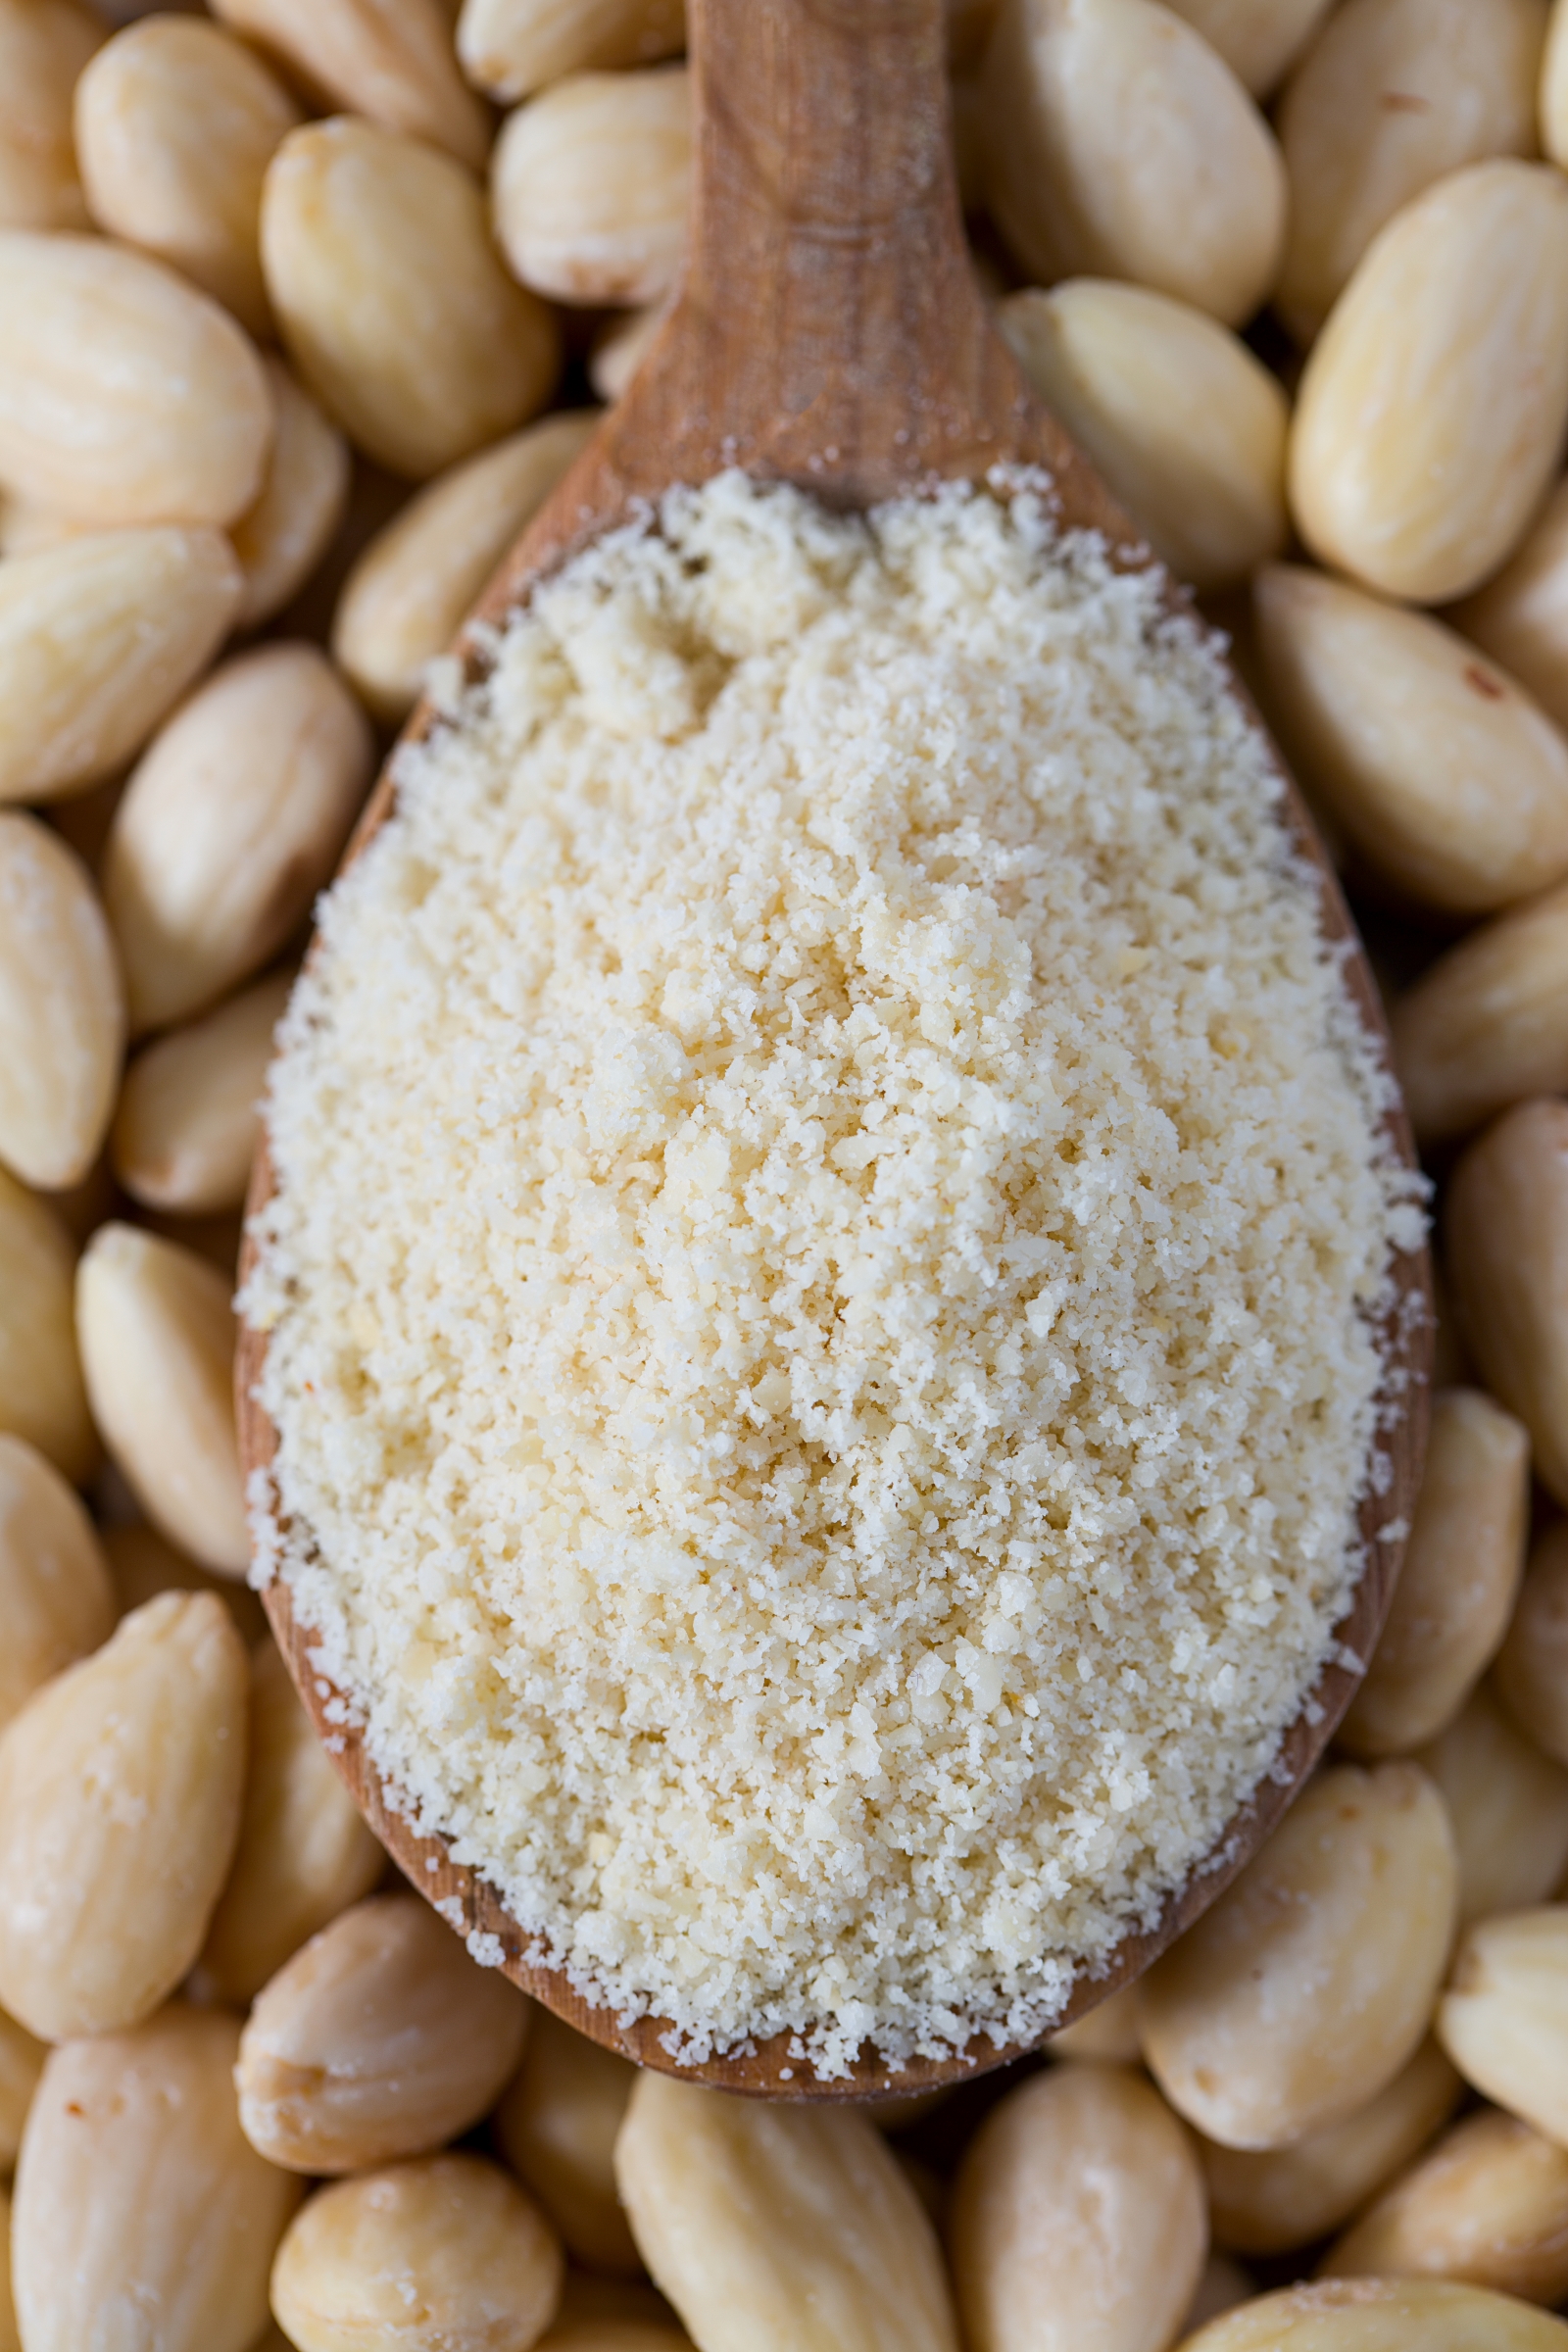 Is Almond Flour Gluten Free?